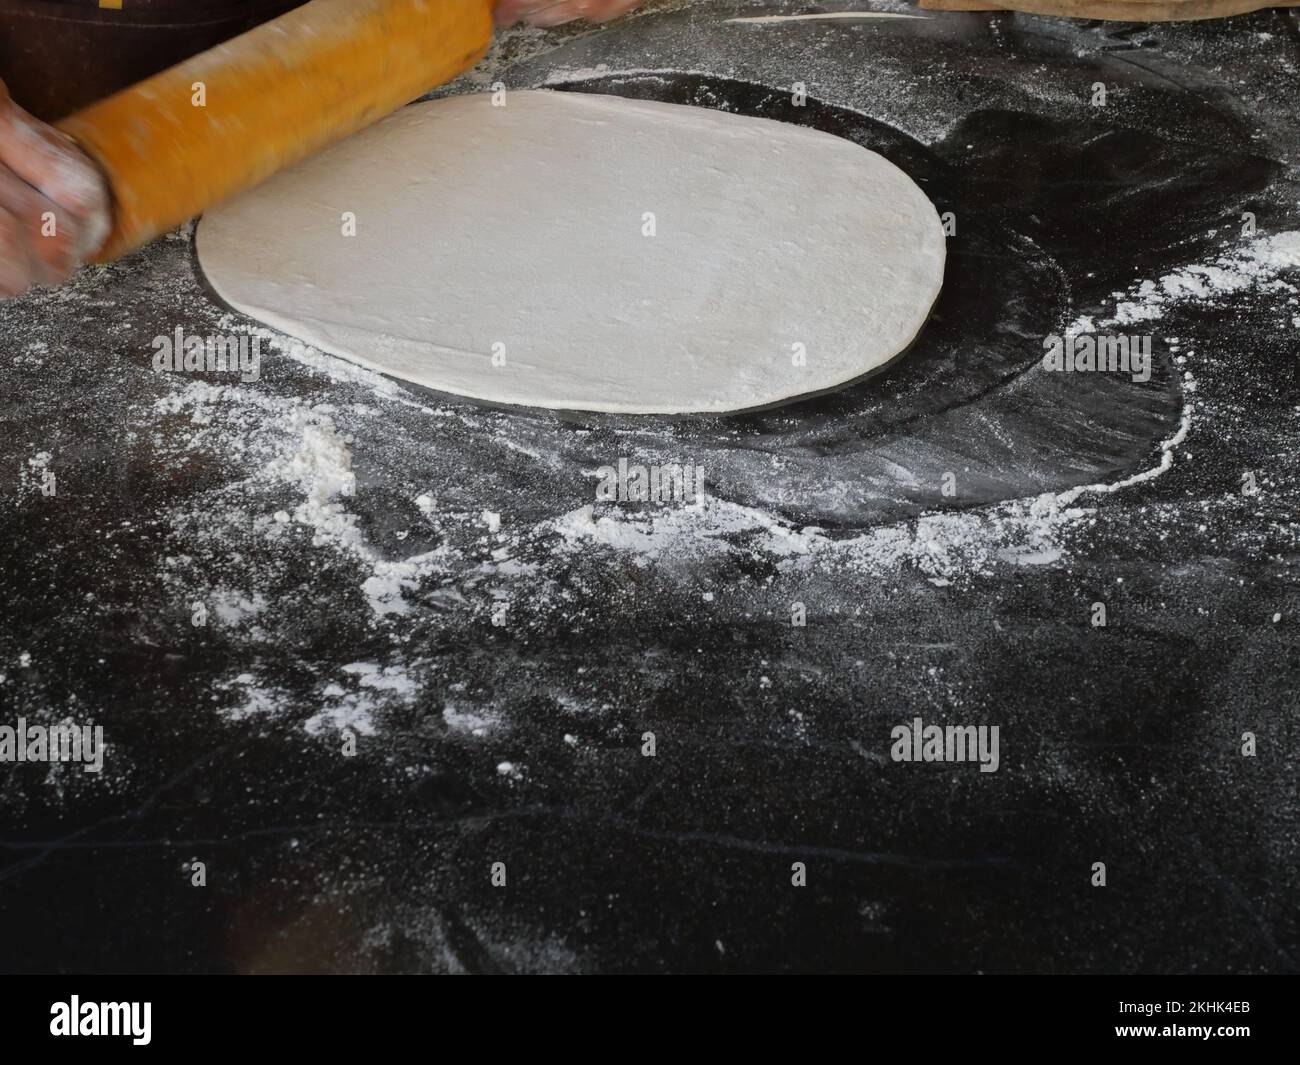 La mano del chef está rodando masa de pizza en forma de círculo aplanado por un rodillo de madera con harina sobre fondo negro Foto de stock